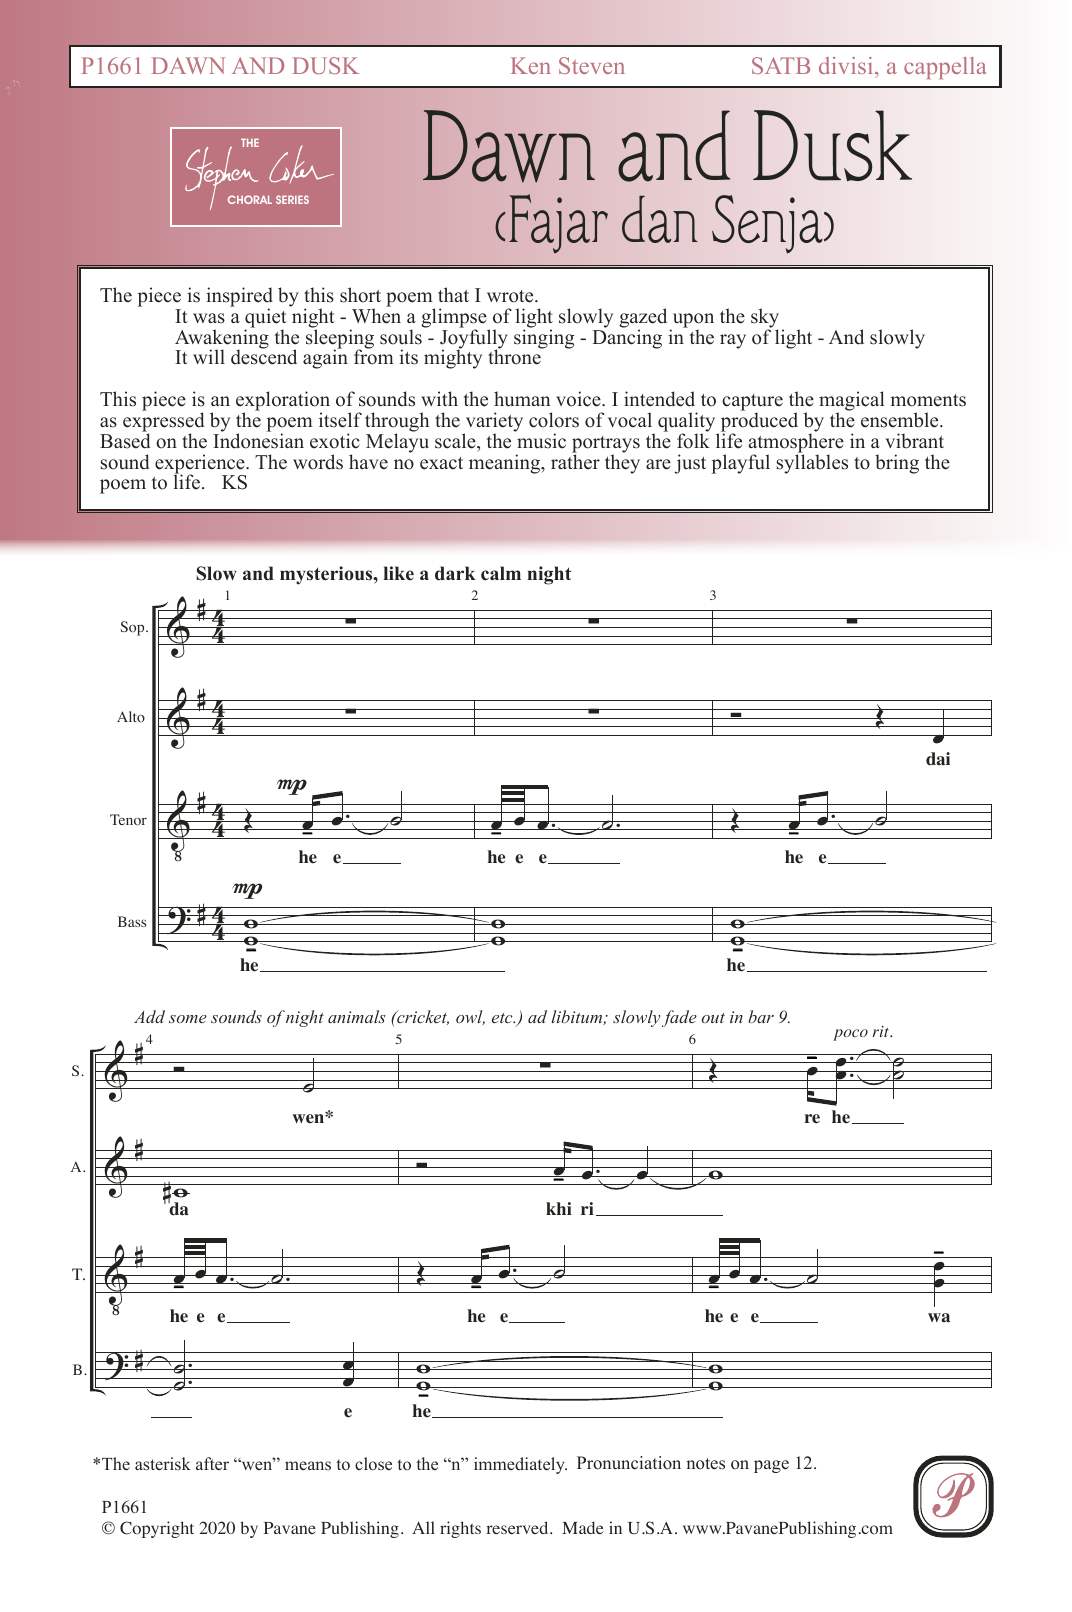 Download Ken Steven Dawn and Dusk (Fajar dan Senja) Sheet Music and learn how to play SATB Choir PDF digital score in minutes